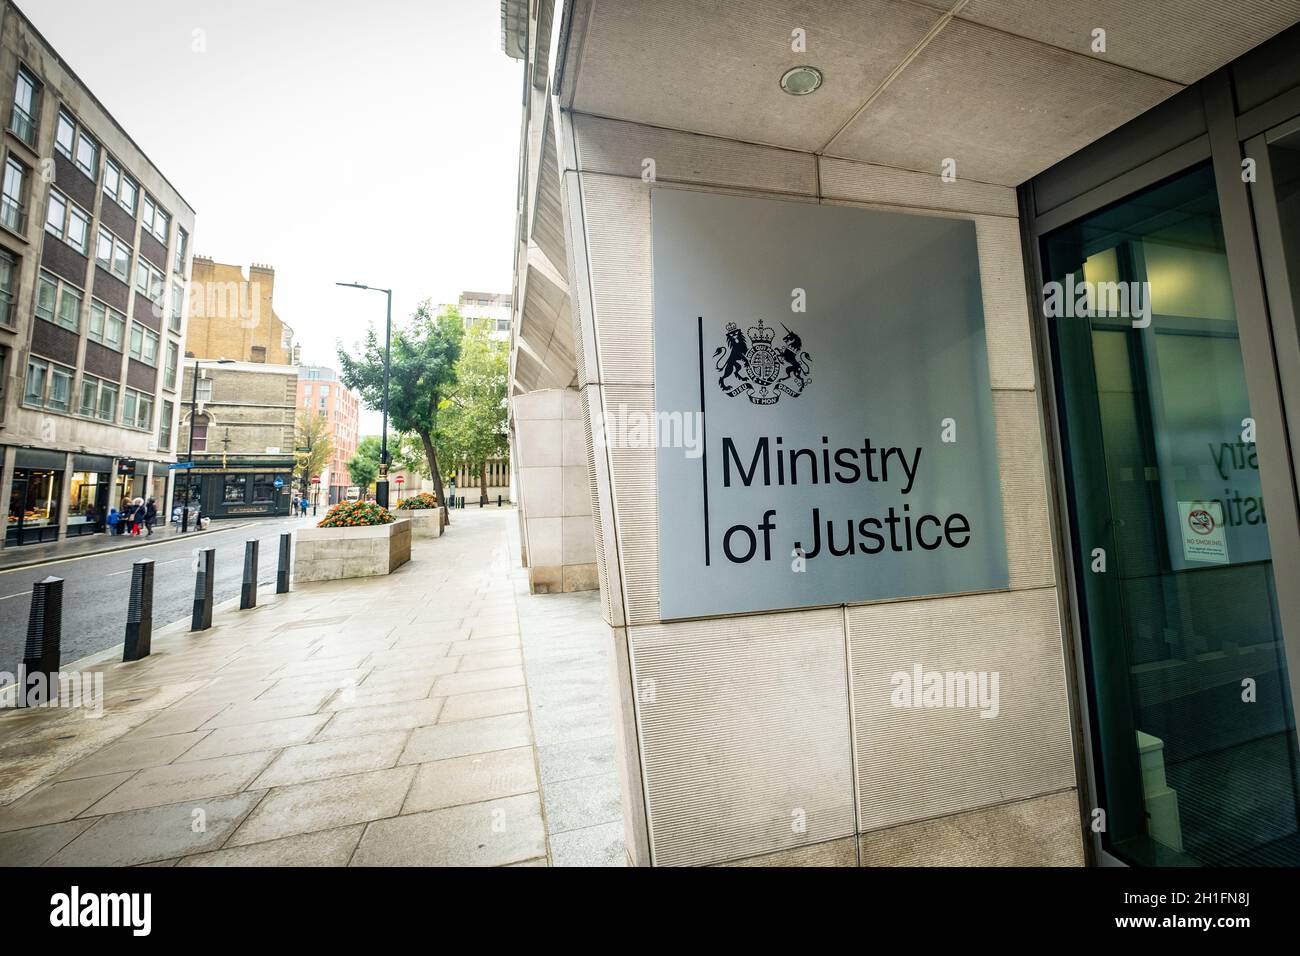 Westminster London - Beschilderung des Justizministeriums. Regierungsgebäude in Großbritannien Stockfoto